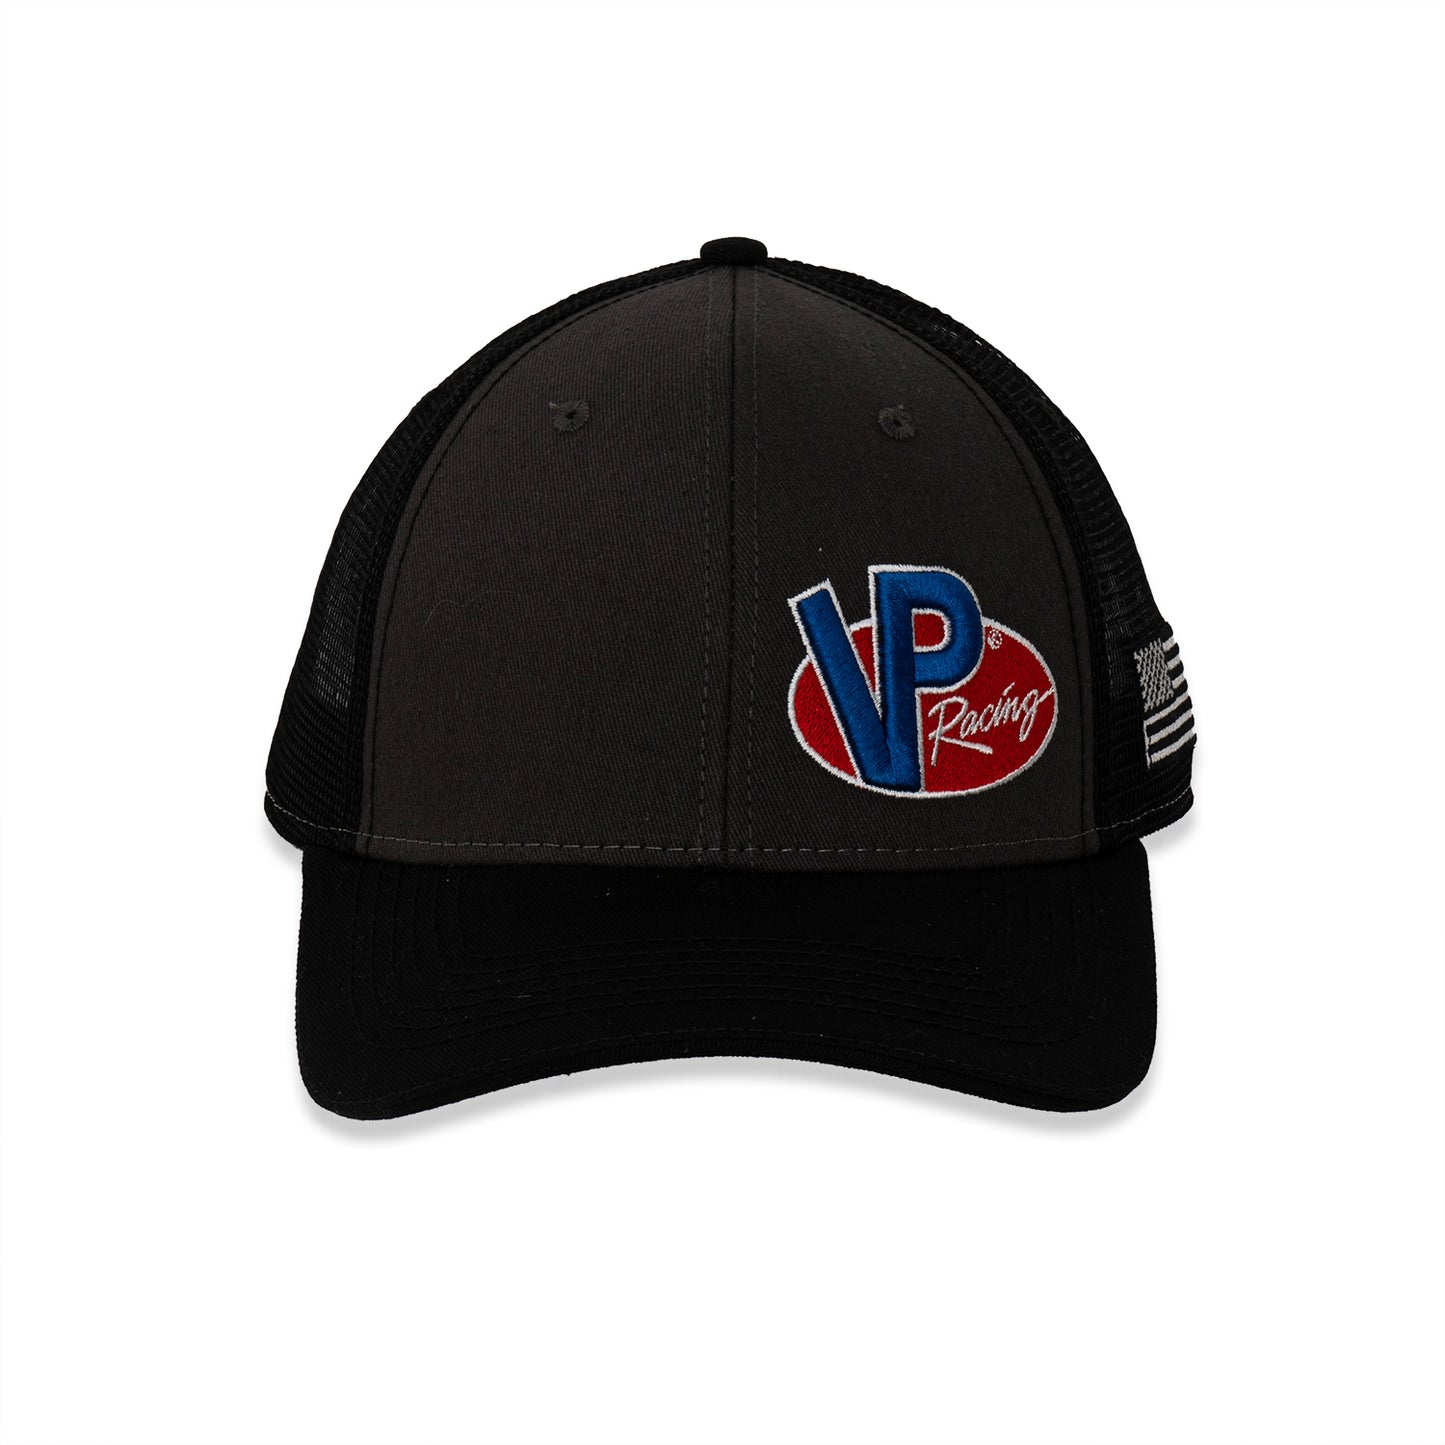 VP Racing Trucker Hat - Black/Grey